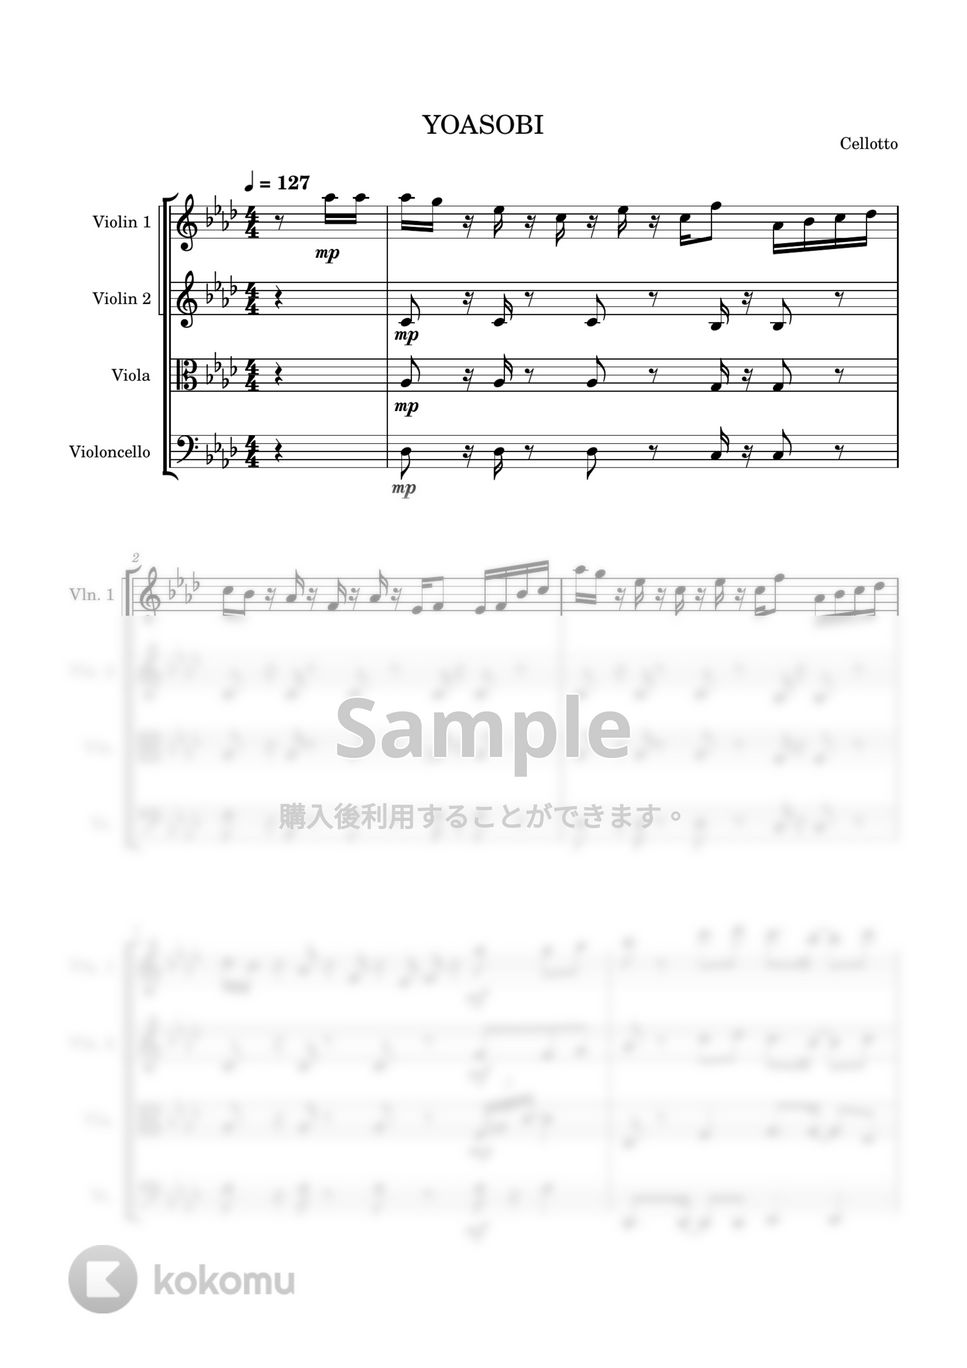 YOASOBI - 三原色 (弦楽四重奏) by Cellotto